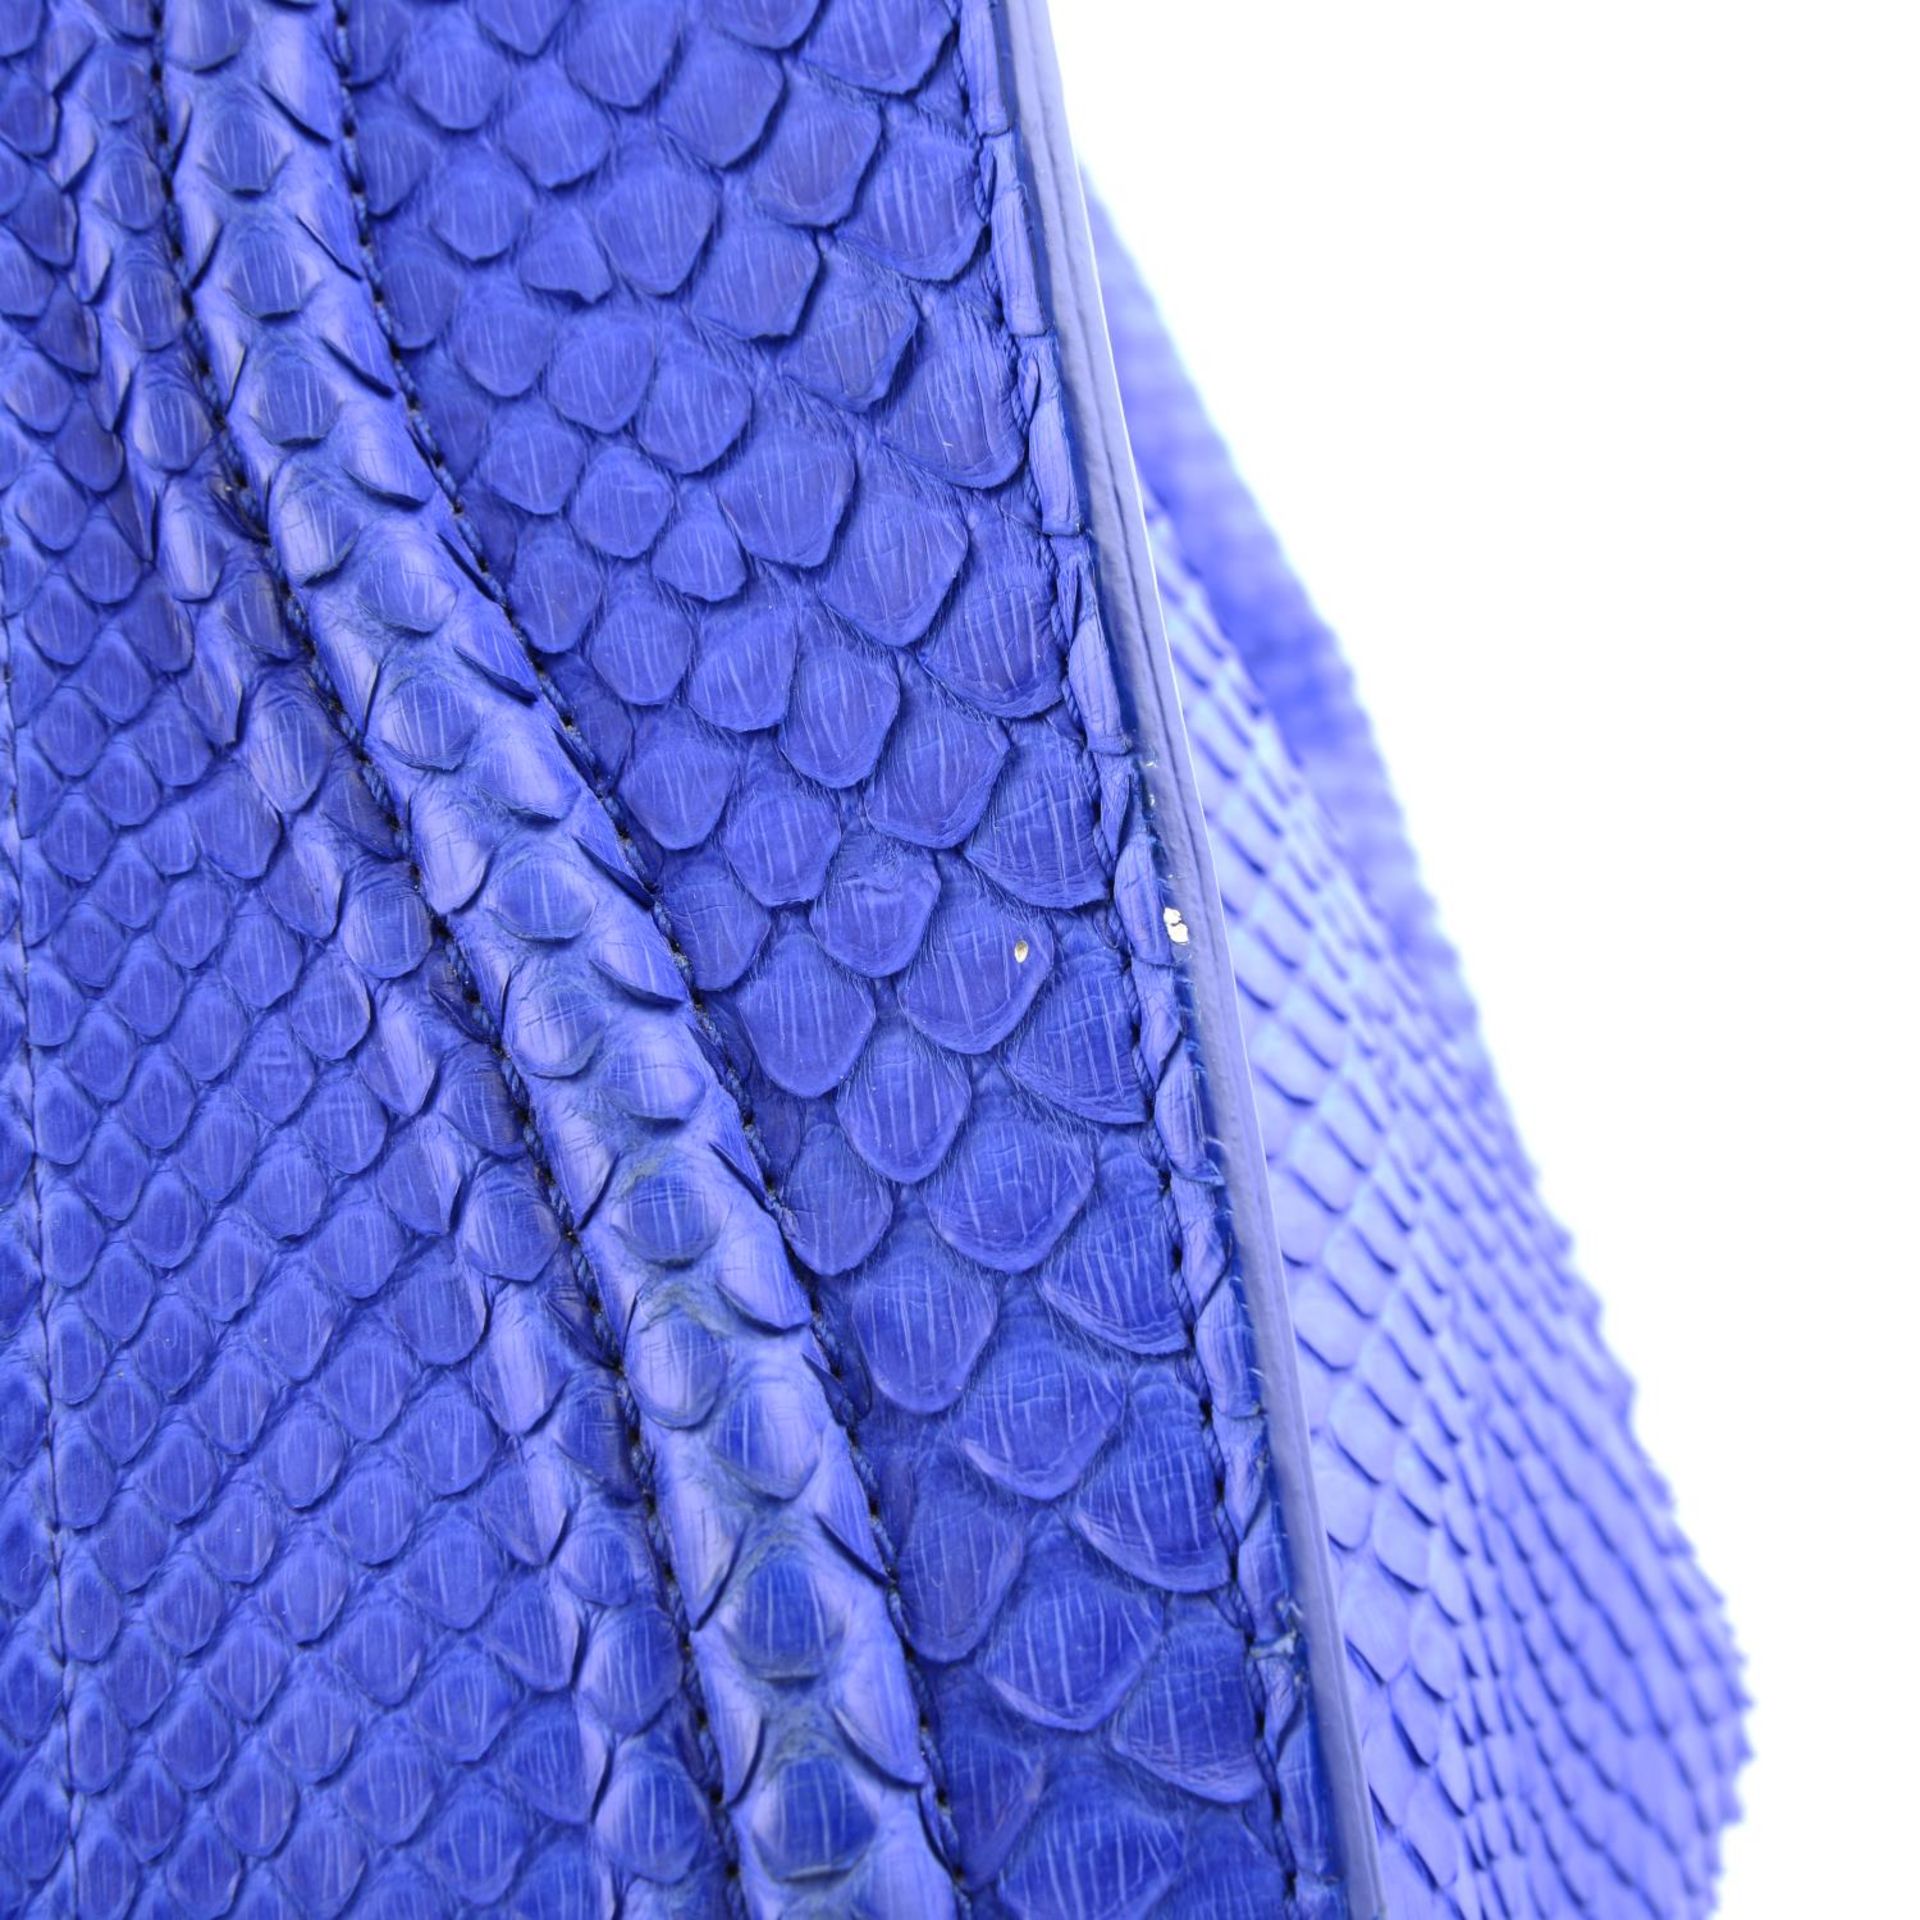 CÉLINE - a blue python skin Phantom handbag. - Image 5 of 9